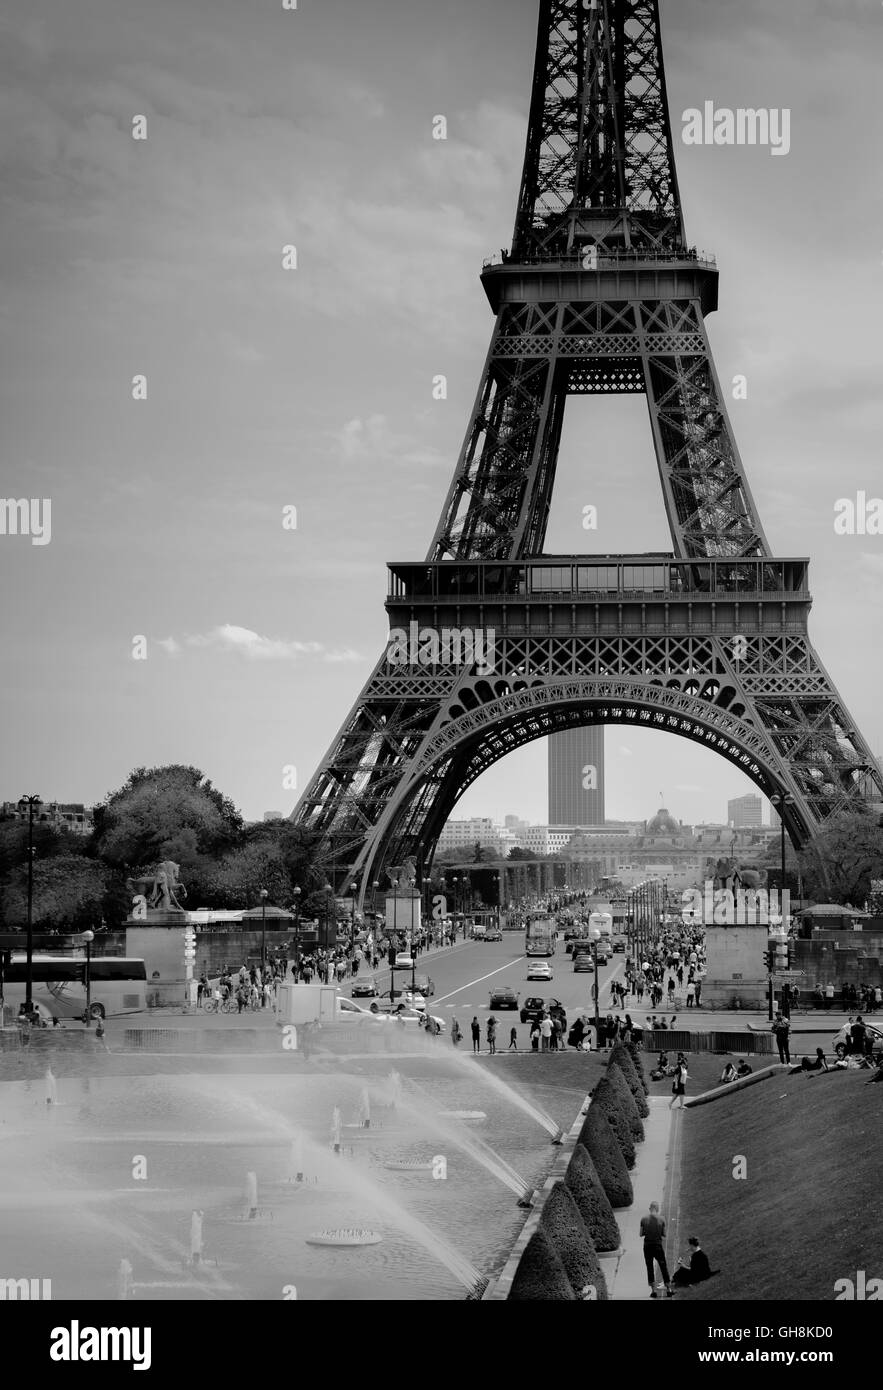 Maggio 2016: turisti che si godono la molla meteo intorno alla Torre Eiffel in anticipo dell'affollata stagione turistica estiva e ondate di calore Foto Stock